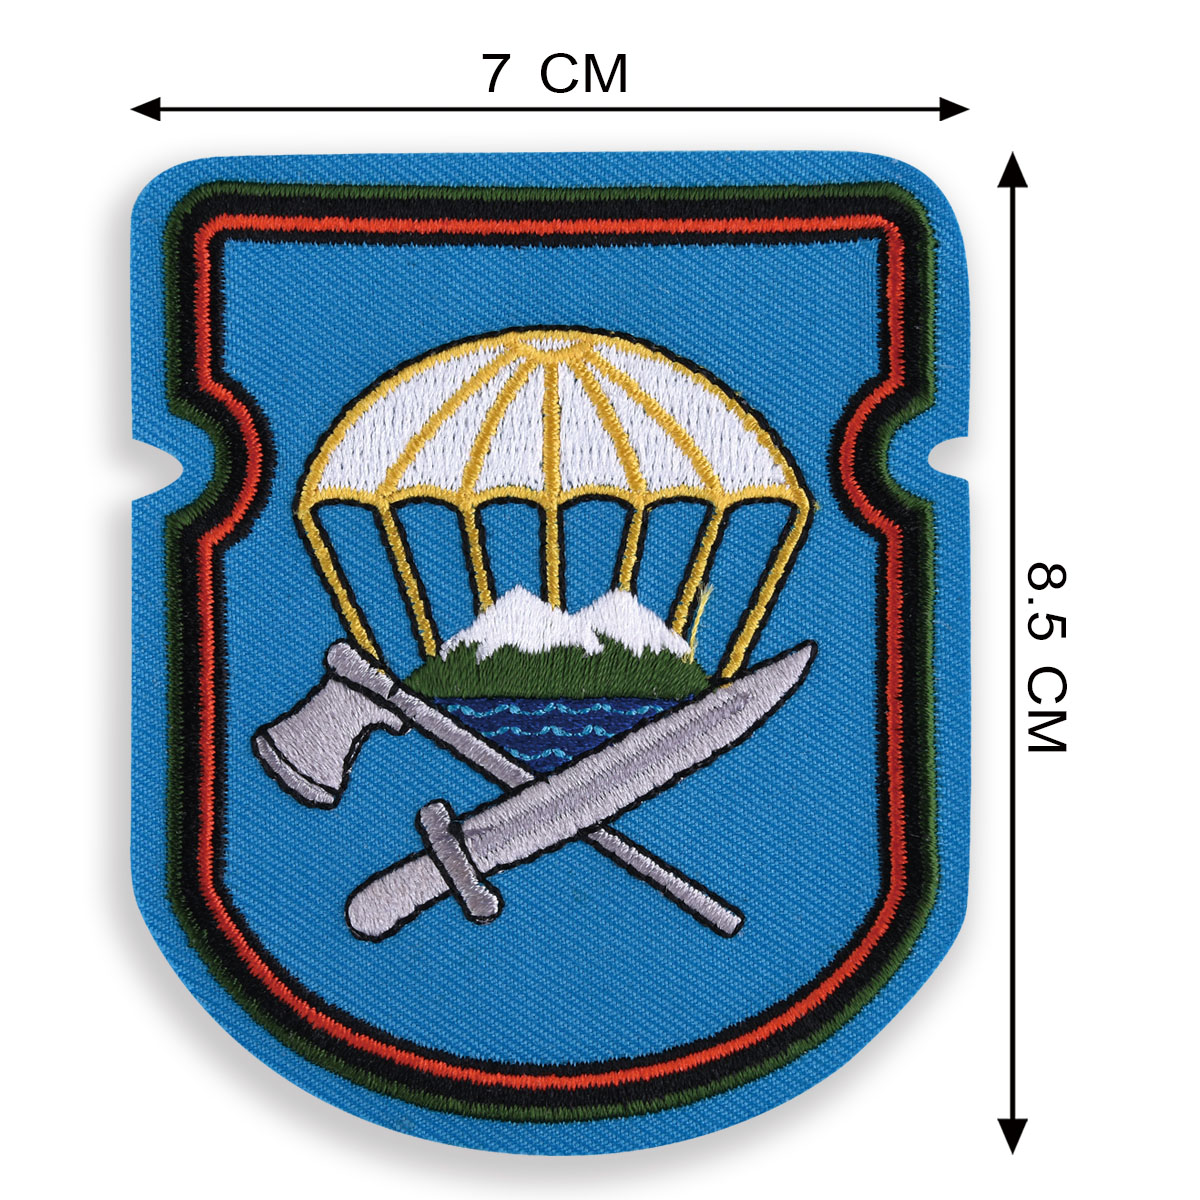 Нарукавный знак ВДВ "629-й отдельный инженерно-сапёрный батальон 7-ой ДШД" 